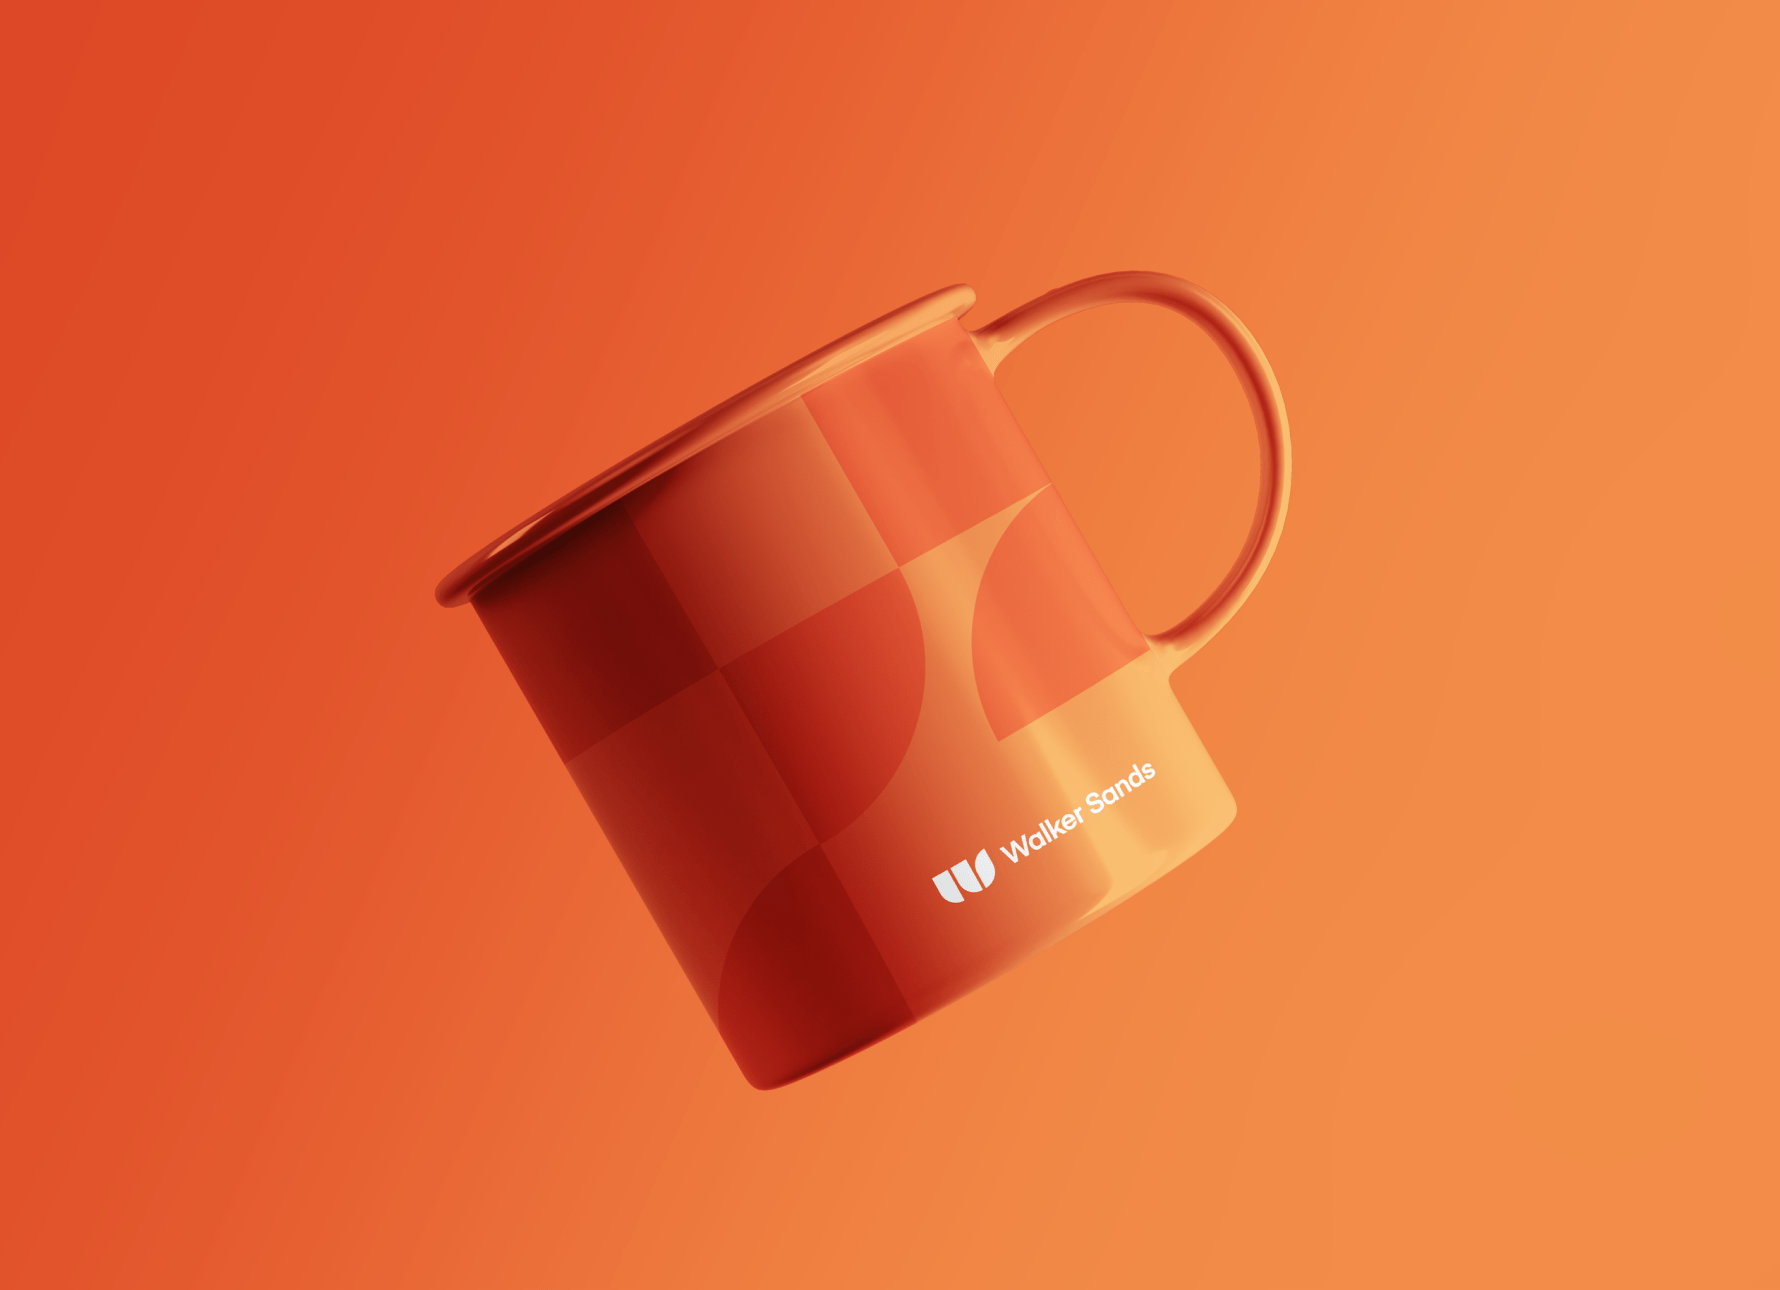 an orange mug with shapes from the new Walker Sands logo in darker orange